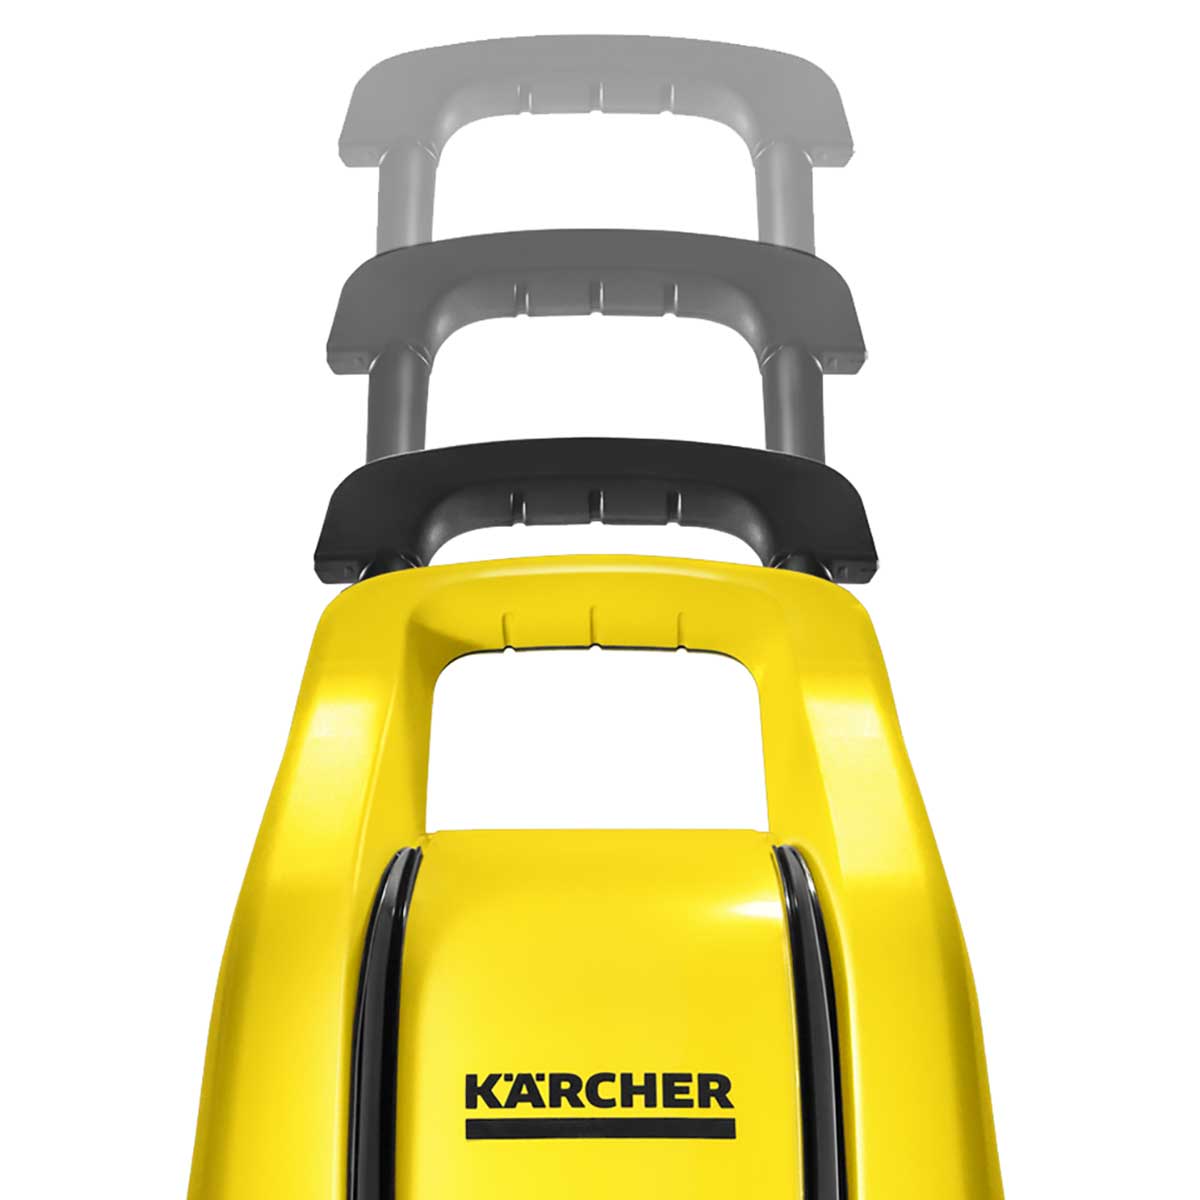 lavadora-karcher-k3-force-turbo-127v-5.jpg